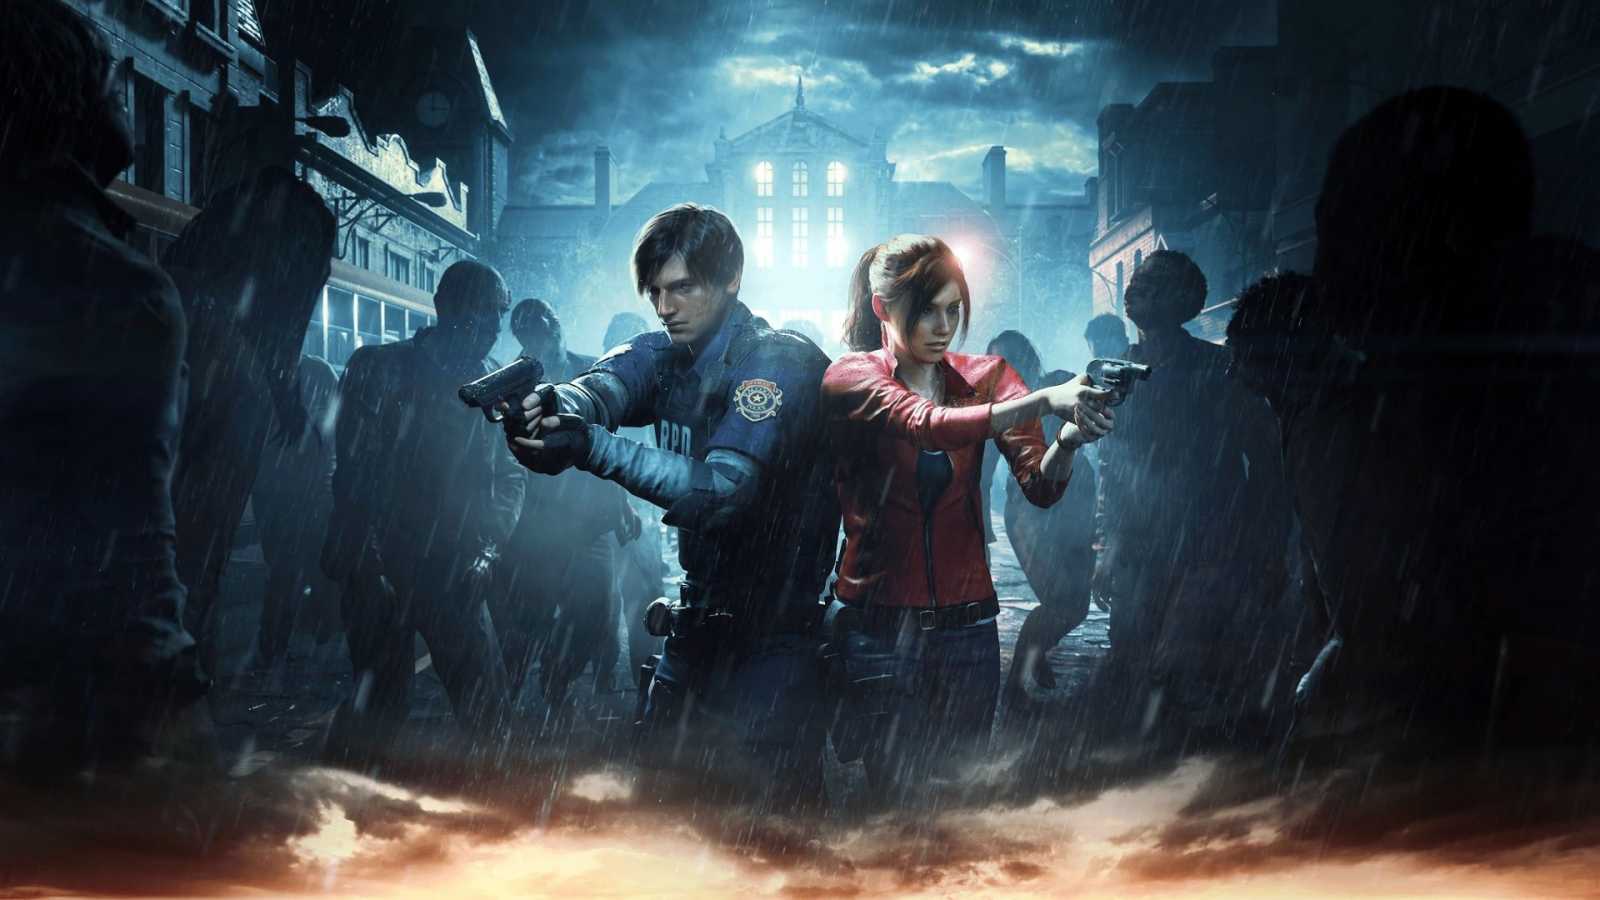 Vylepšené verze Resident Evil 2, 3 a 7 lze na PC vrátit do původního stavu. Capcom vyslyšel přání hráčů